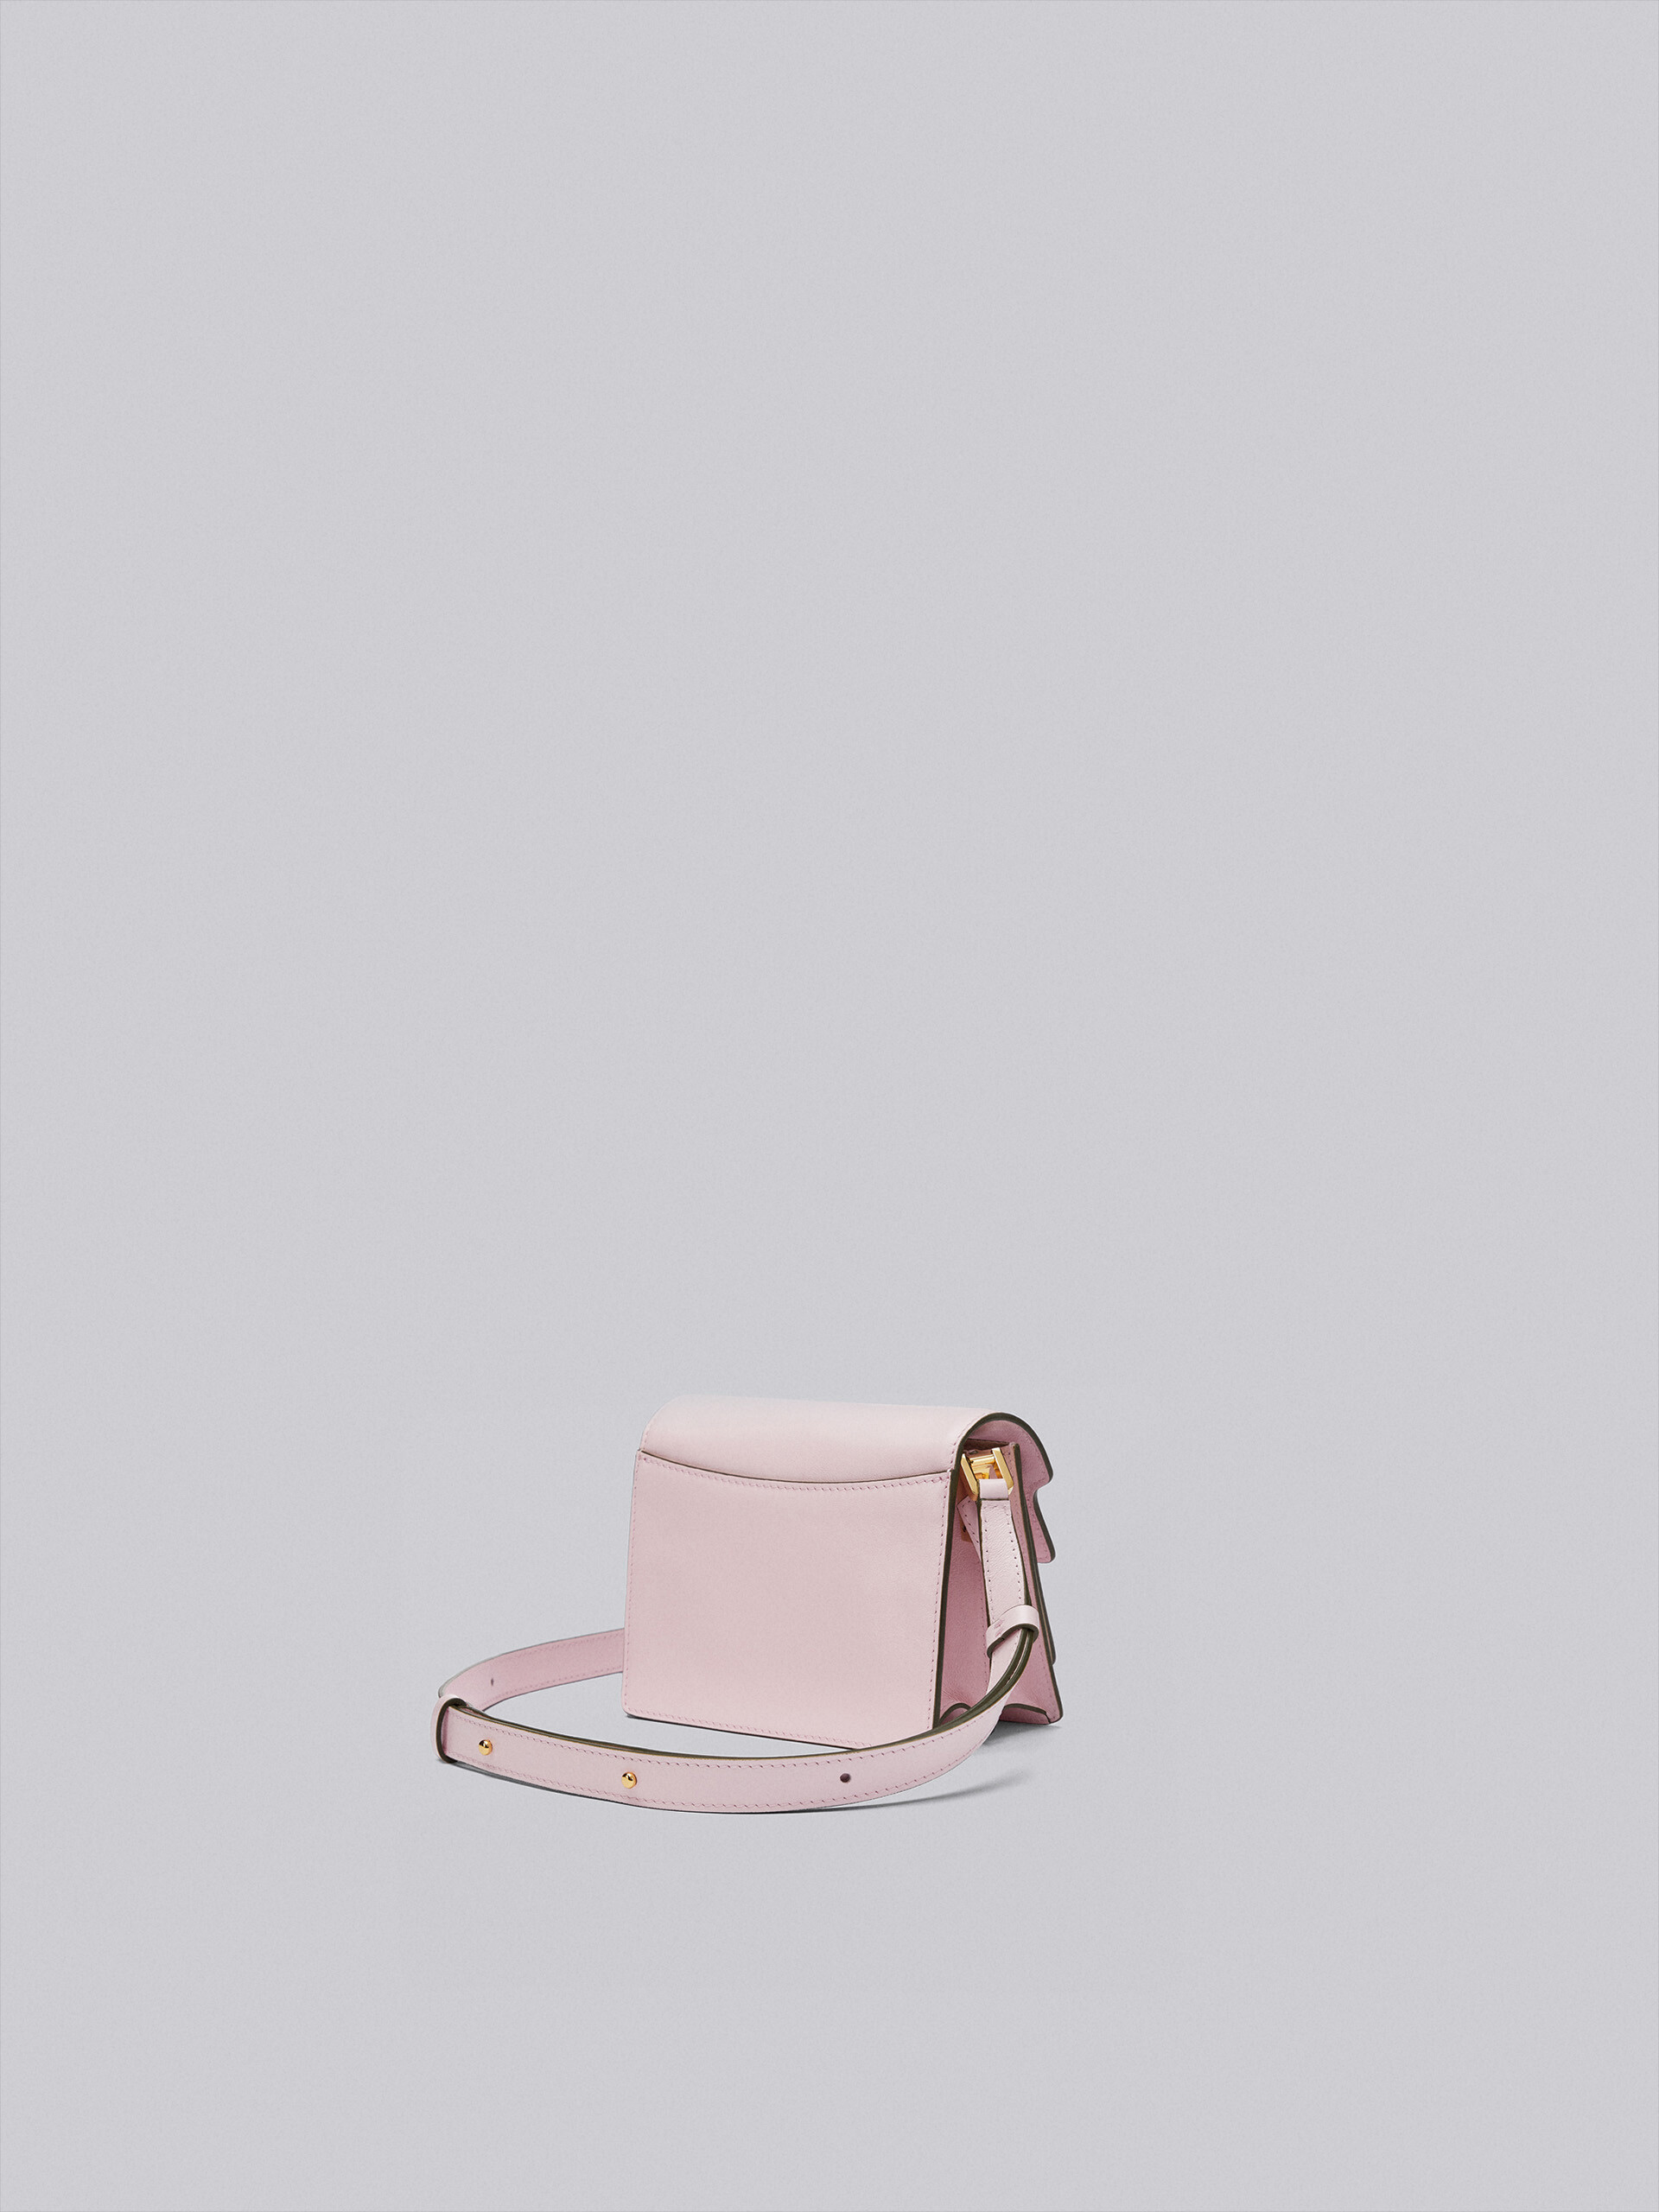 TRUNK SOFT mini bag in pink leather - Shoulder Bag - Image 2